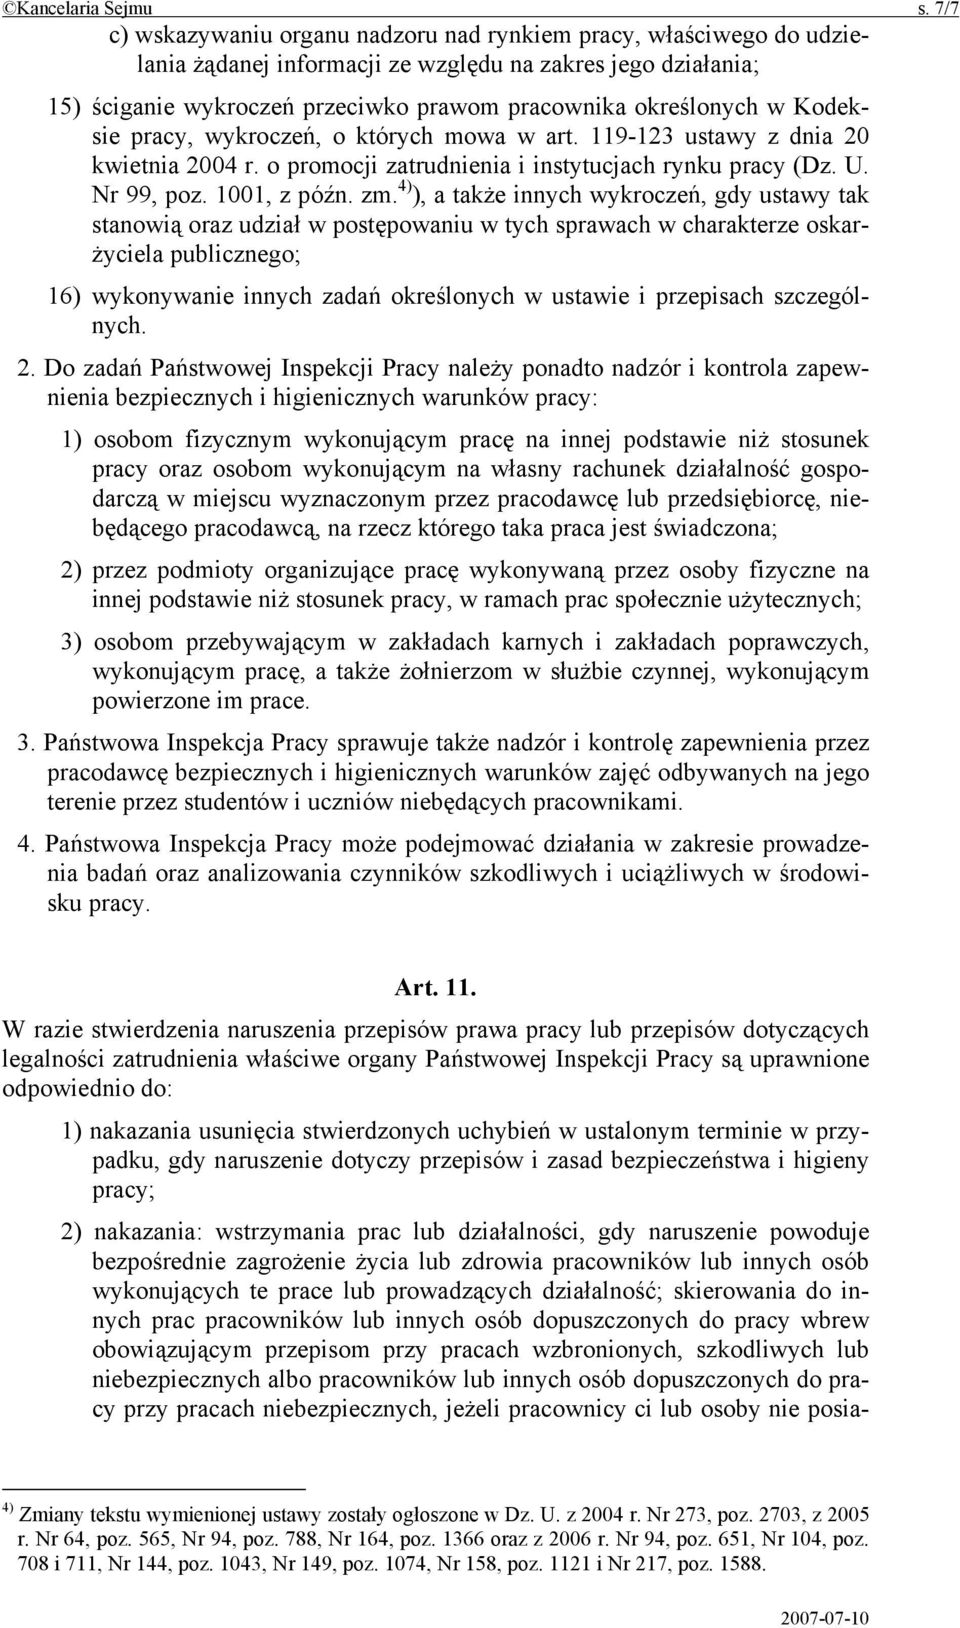 Kodeksie pracy, wykroczeń, o których mowa w art. 119-123 ustawy z dnia 20 kwietnia 2004 r. o promocji zatrudnienia i instytucjach rynku pracy (Dz. U. Nr 99, poz. 1001, z późn. zm.